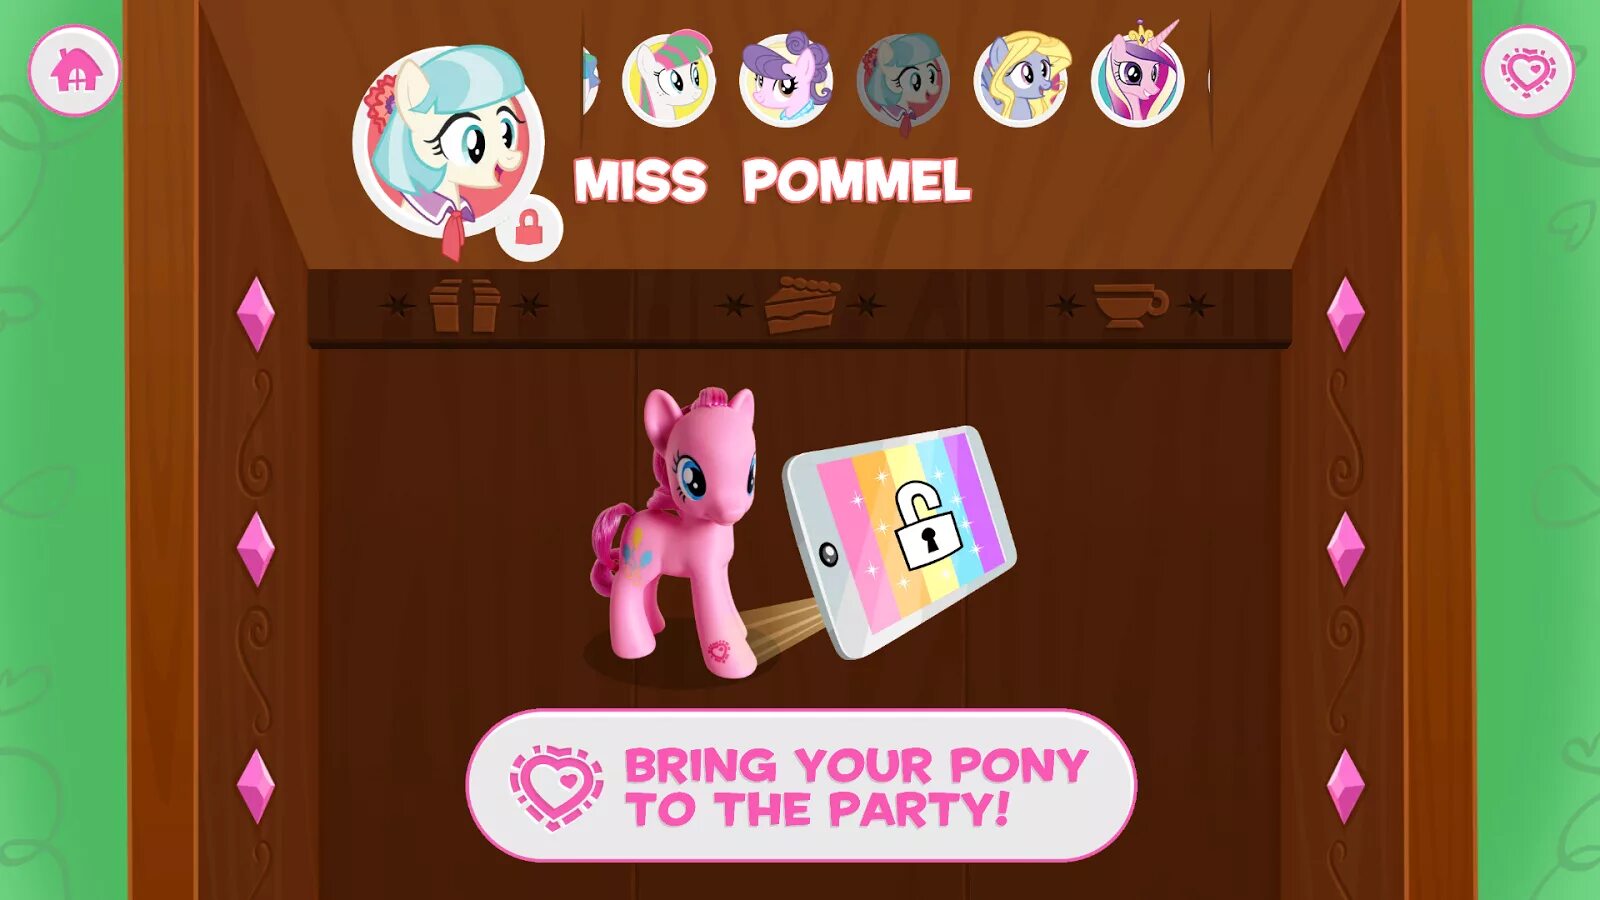 Pony celebration. My little Pony Celebration игра. Коды для игры my little Pony Friendship Celebration. Zap коды для приложения my little Pony. Pursey Pink пони.